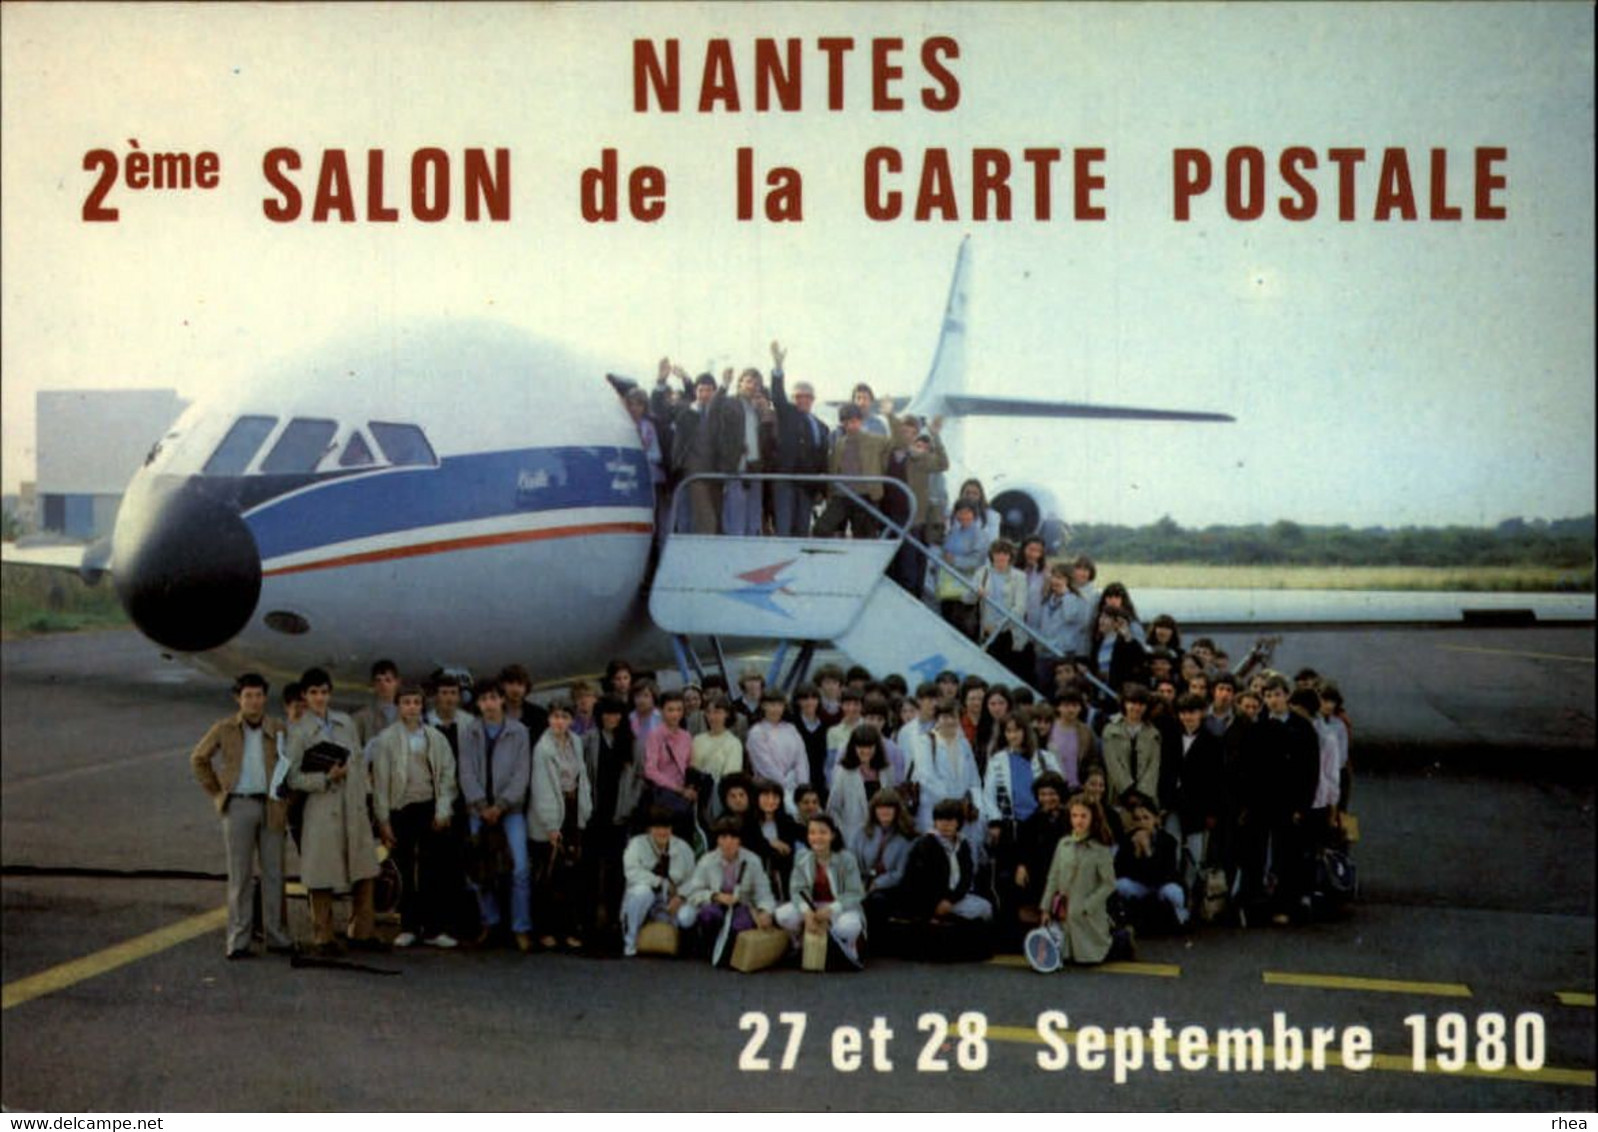 SALONS DE COLLECTIONS - Salon De Cartes Postales -  NANTES - 1980 - Aéroport - Avion - Bourses & Salons De Collections